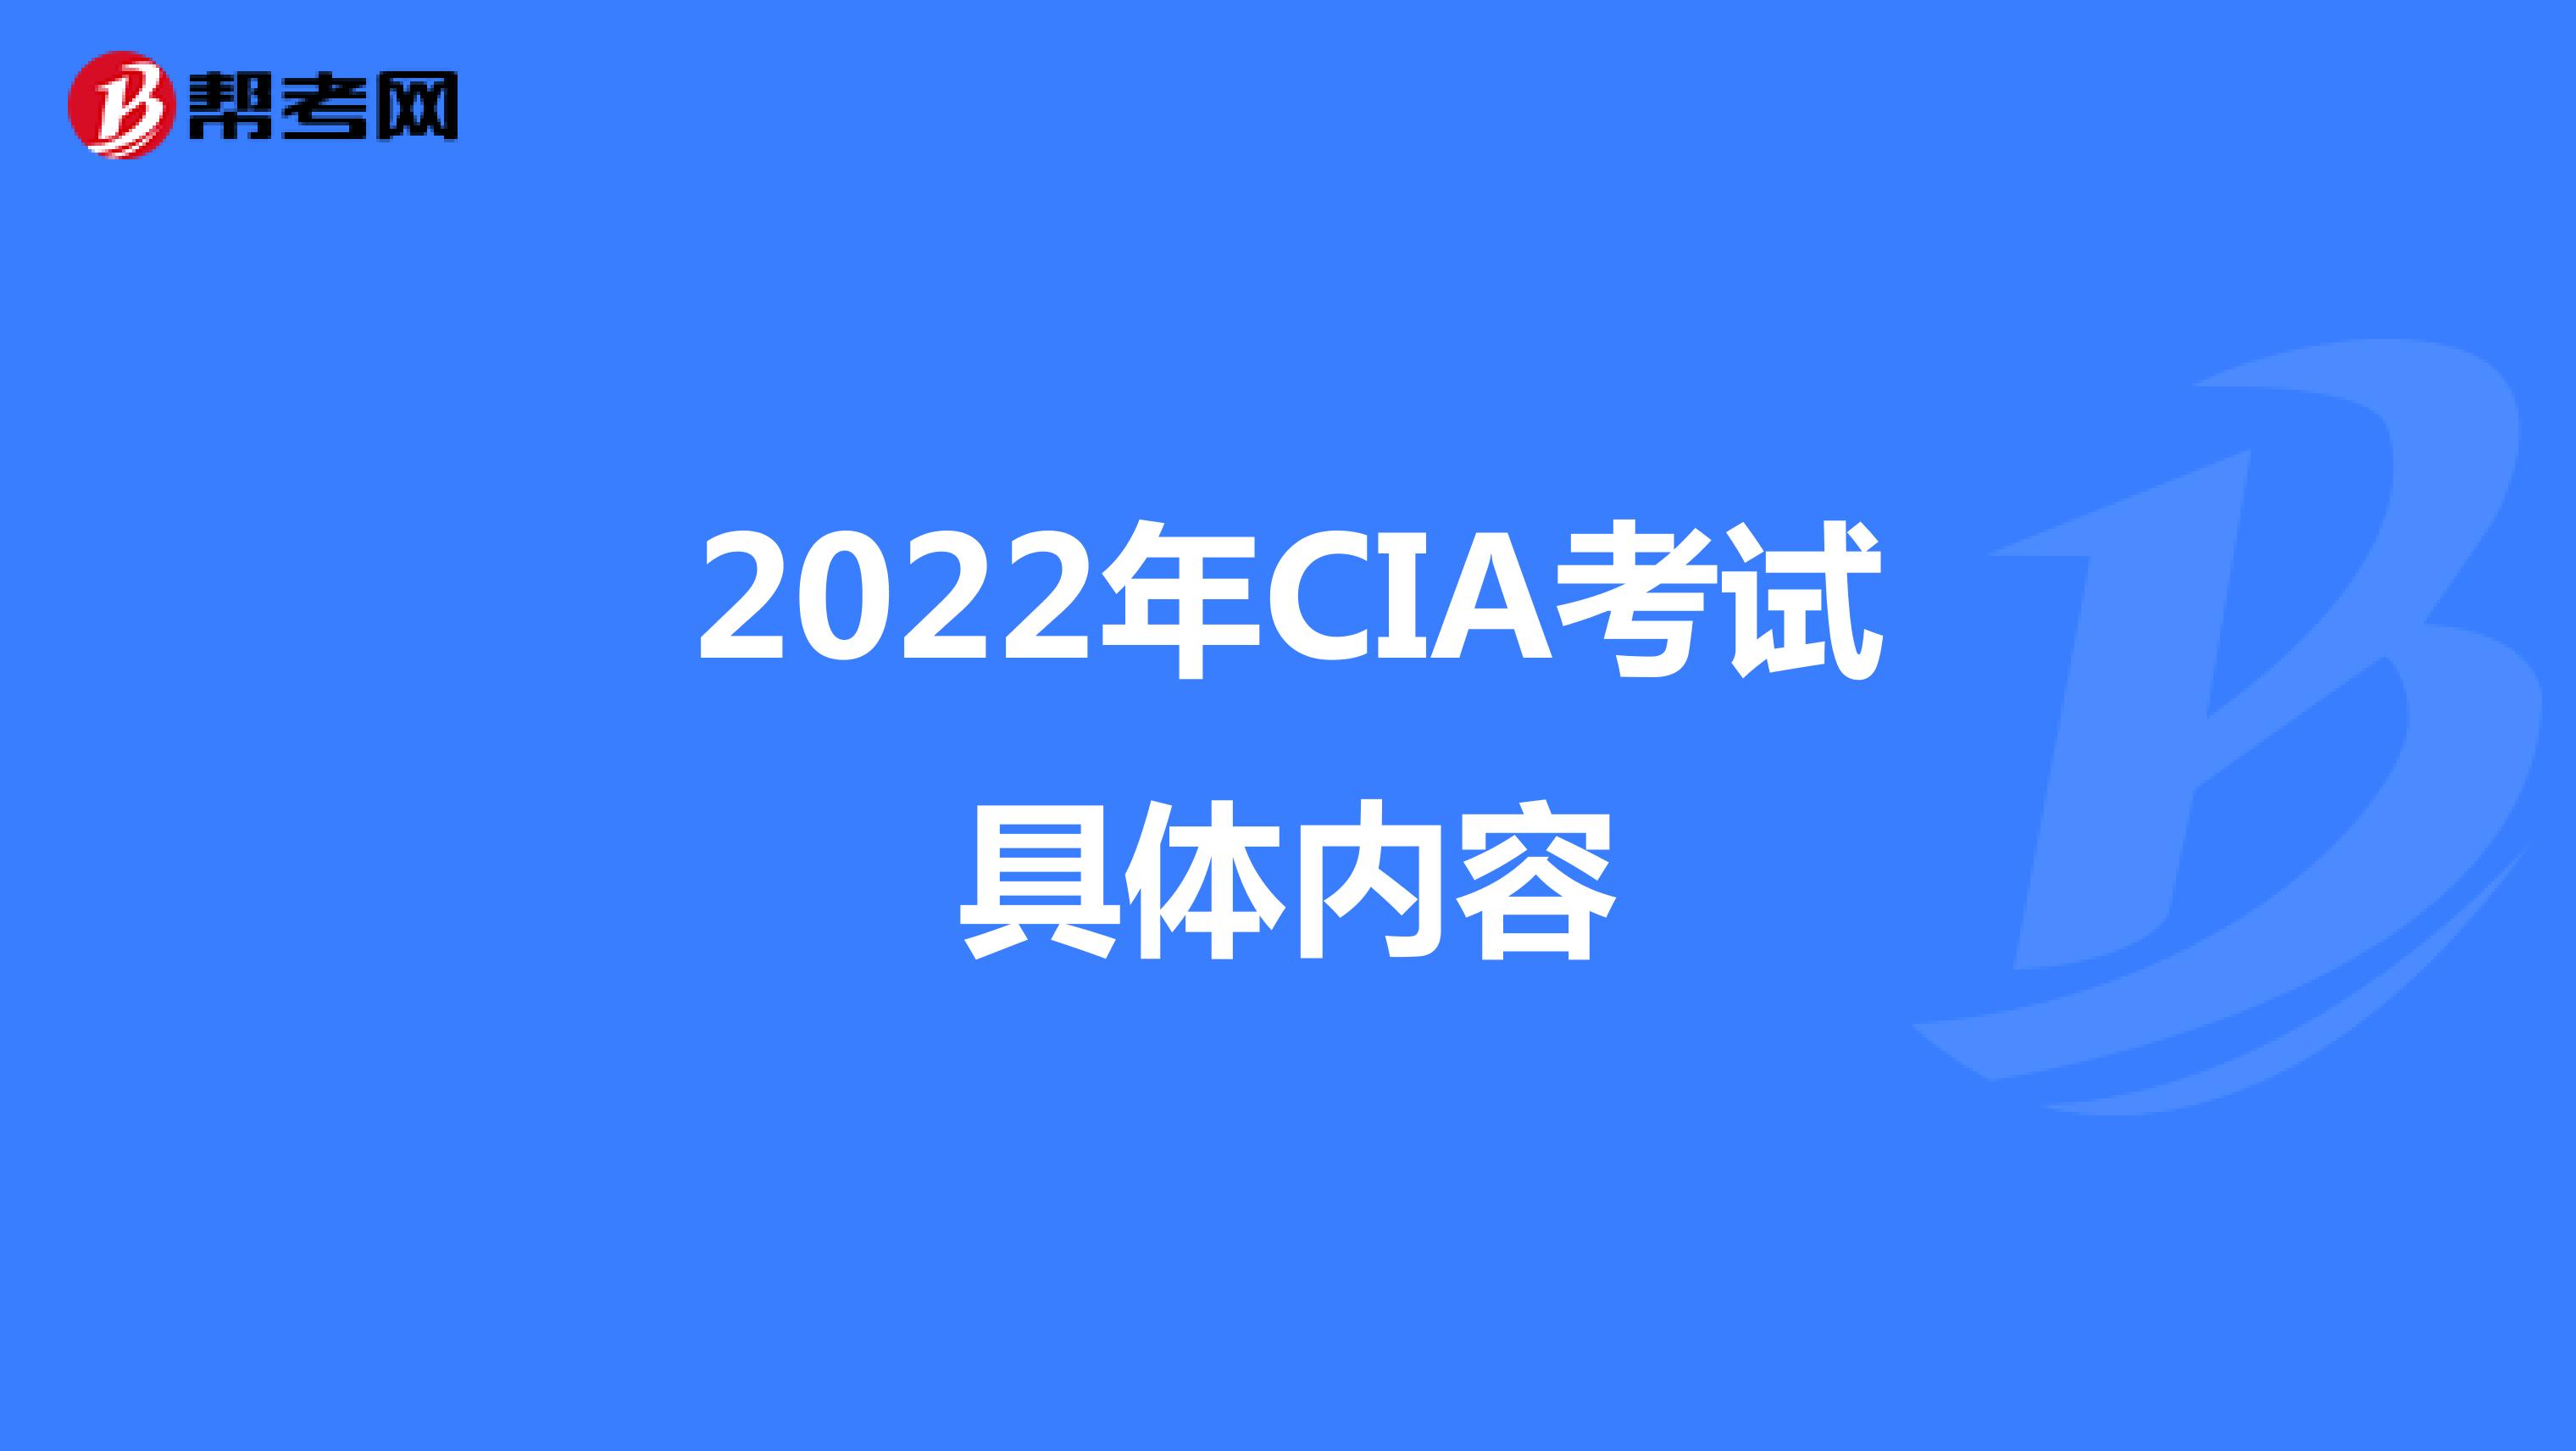 2022年CIA考试具体内容